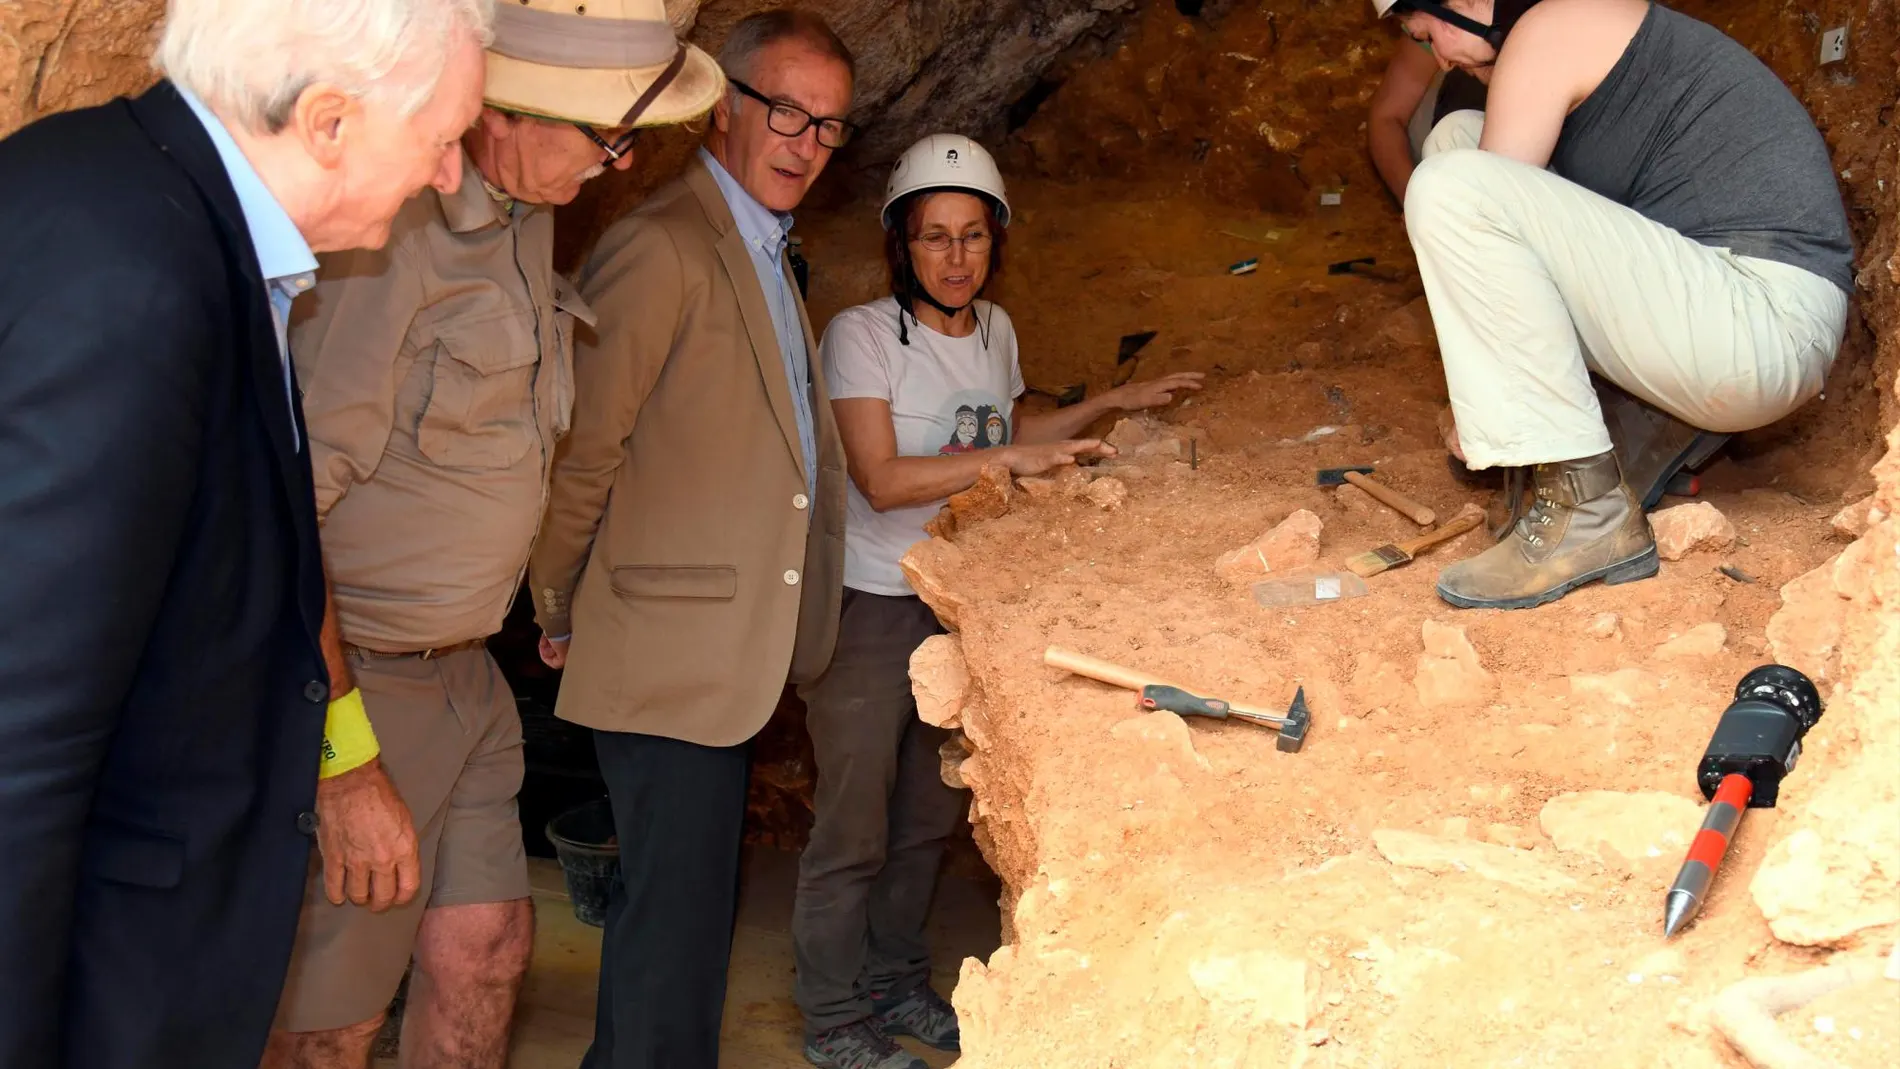 El ministro de Cultura y Deporte, José Guirao, visita los yacimientos arqueológicos de Atapuerca junto al presidente de la Fundación Atapuerca, Antonio Miguel Méndez Pozo y los co-directores de la excavación